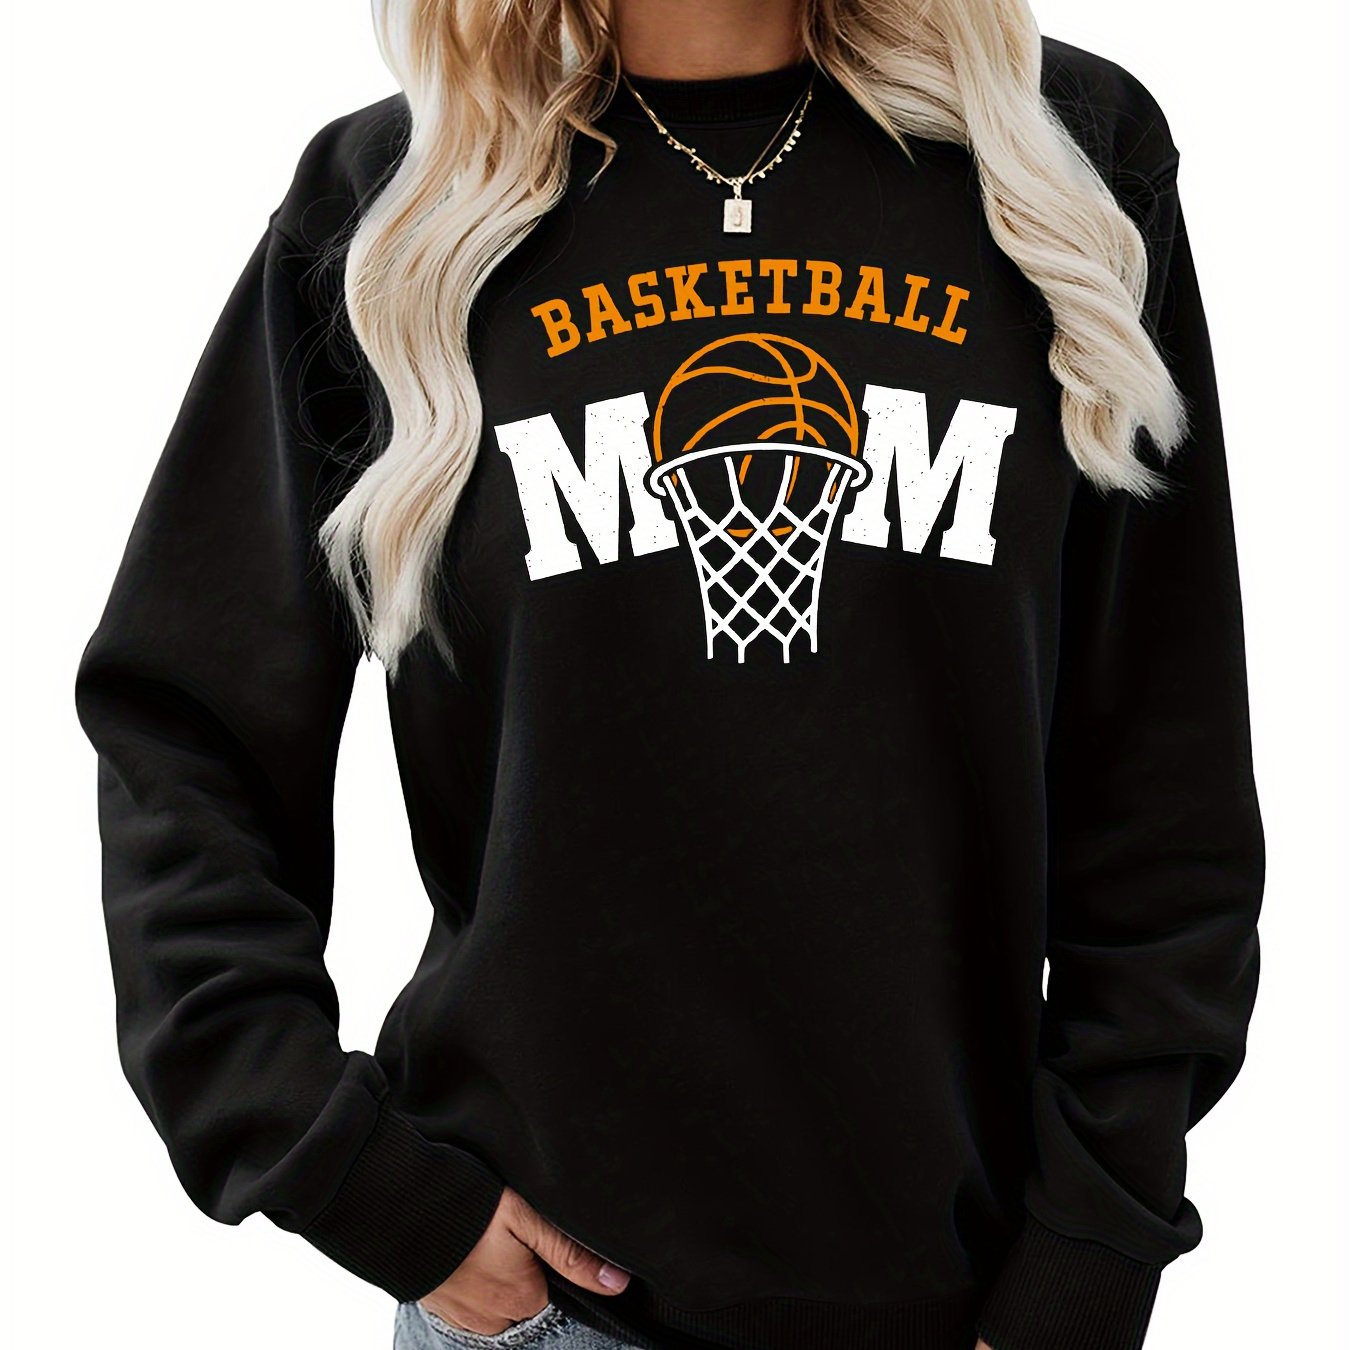 

Basketball Mom Print Sweatshirt, Casual Crew Neck Long Sleeve Sweatshirt, Women's Clothing